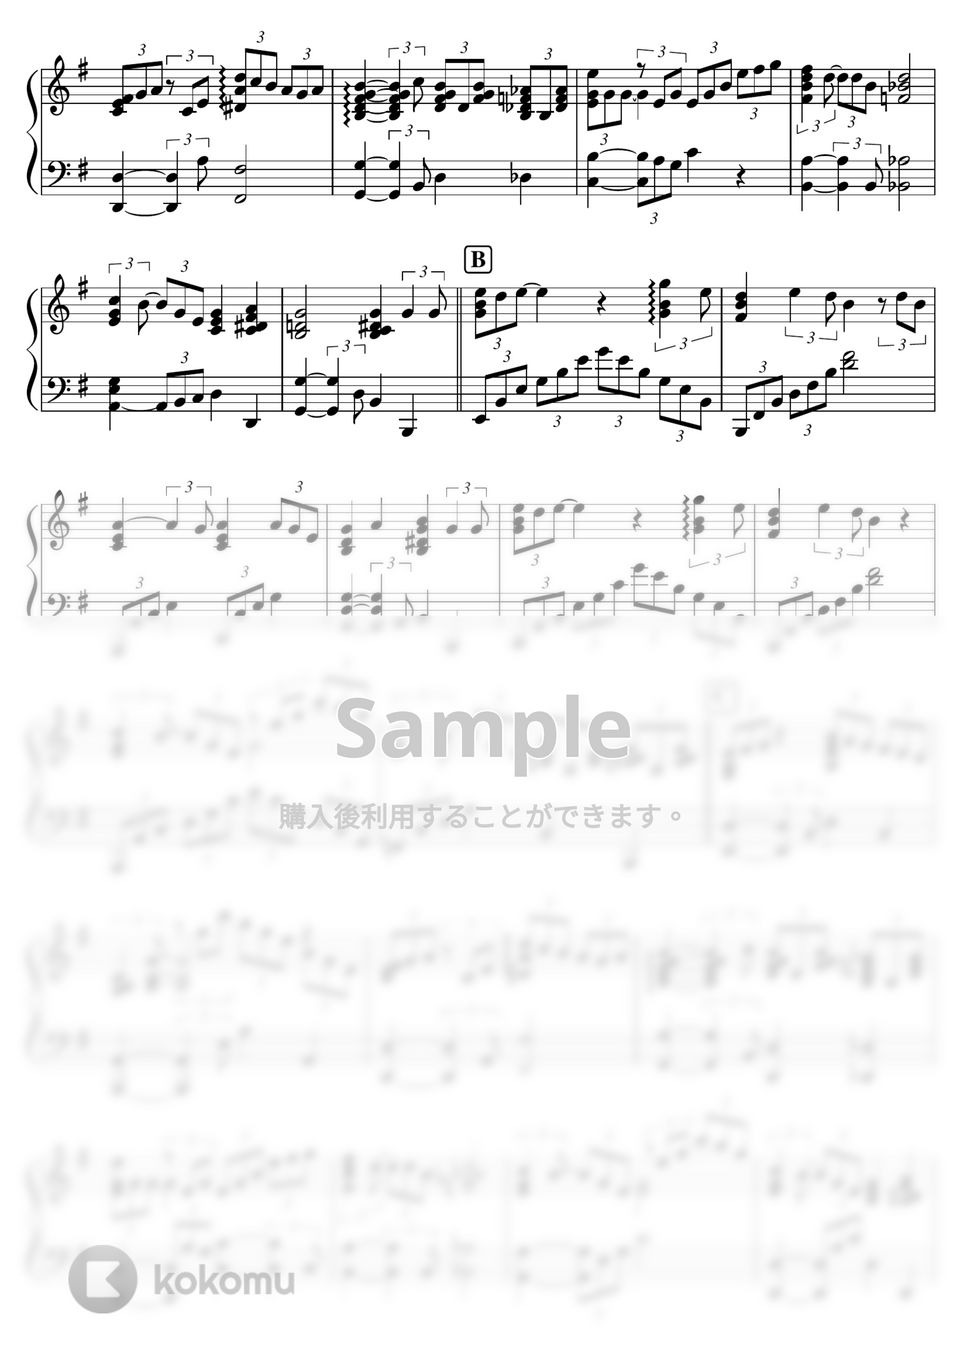 藤井風 - 【中級-上級】風よ／藤井風 (藤井風,風よ) by ピアノのせんせいの楽譜集